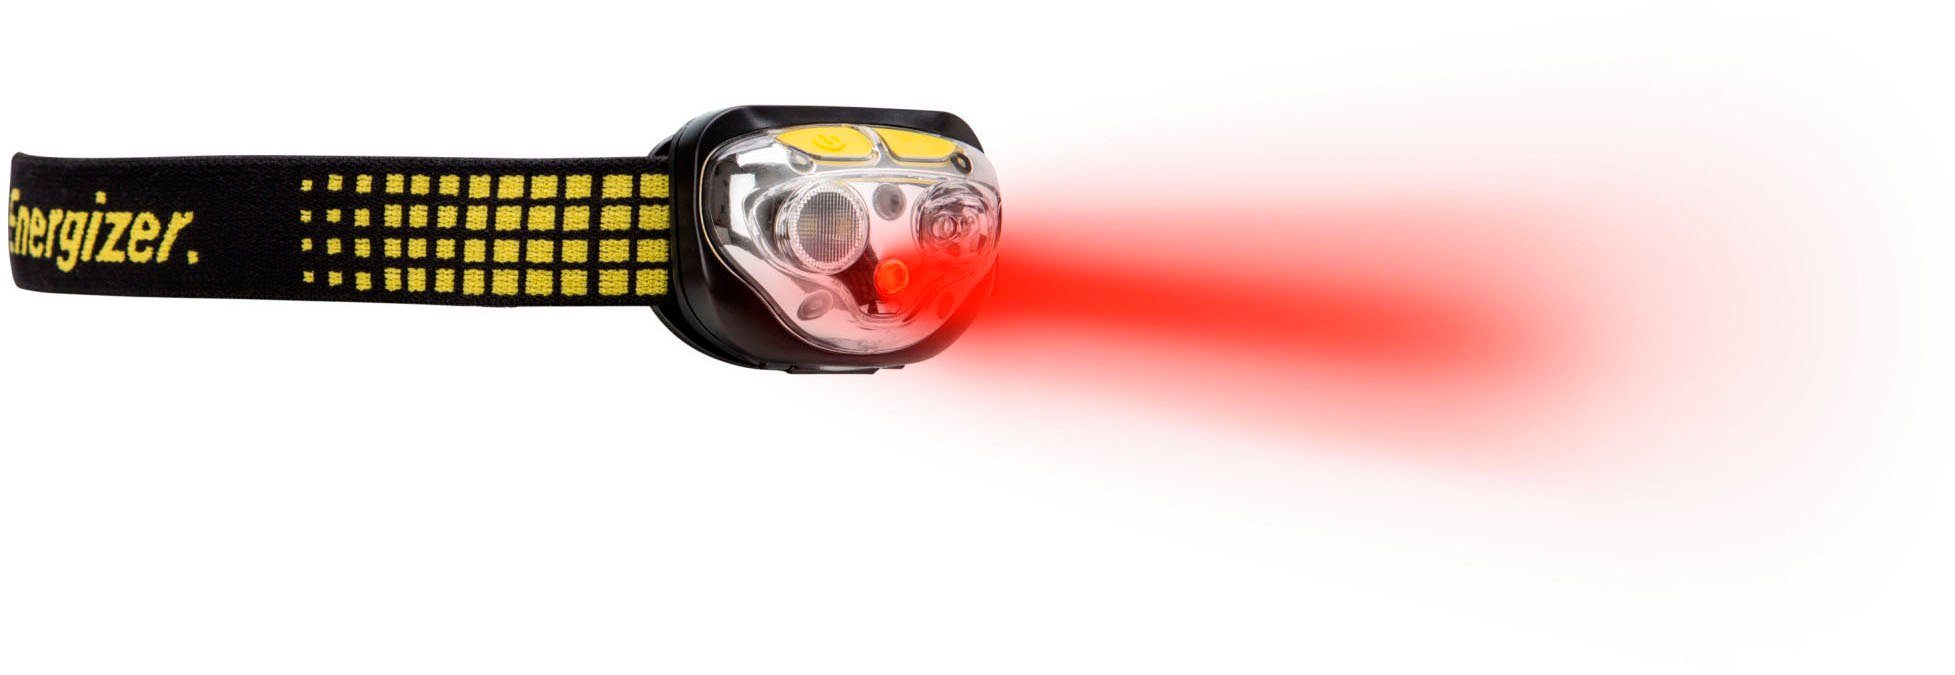 Energizer LED Stirnlampe Vision Lumen 450 Ultra